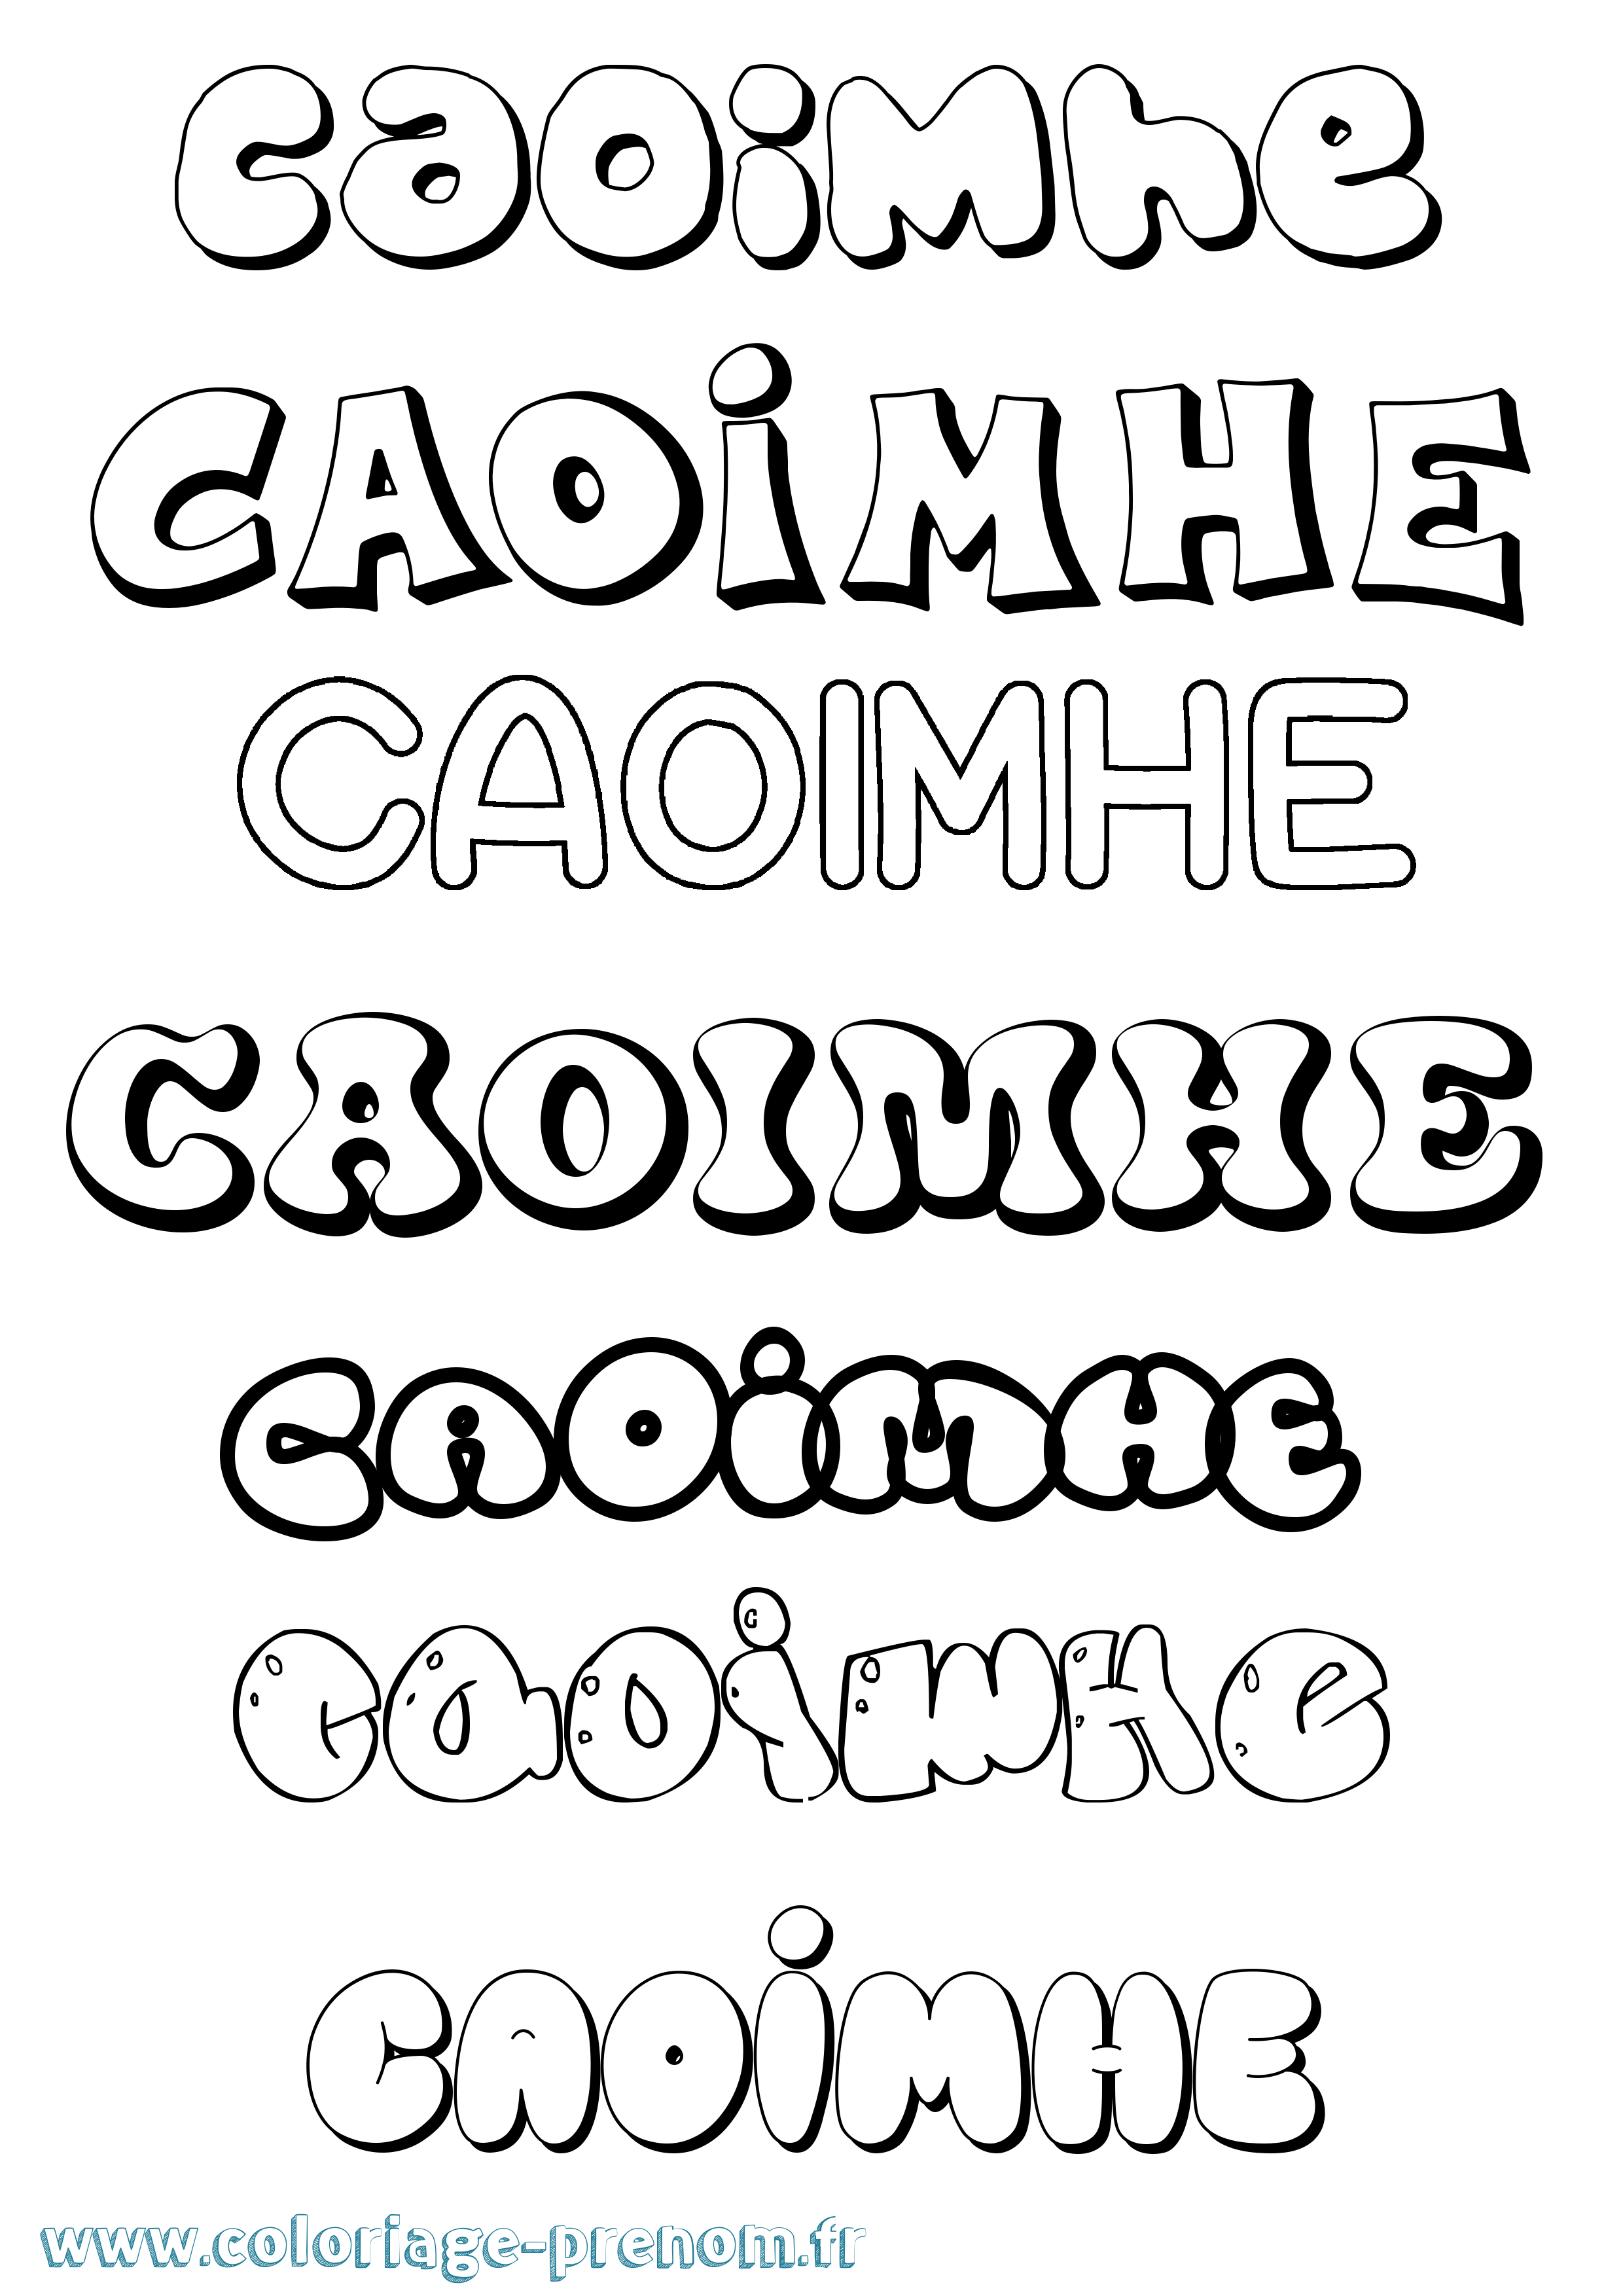 Coloriage prénom Caoimhe Bubble